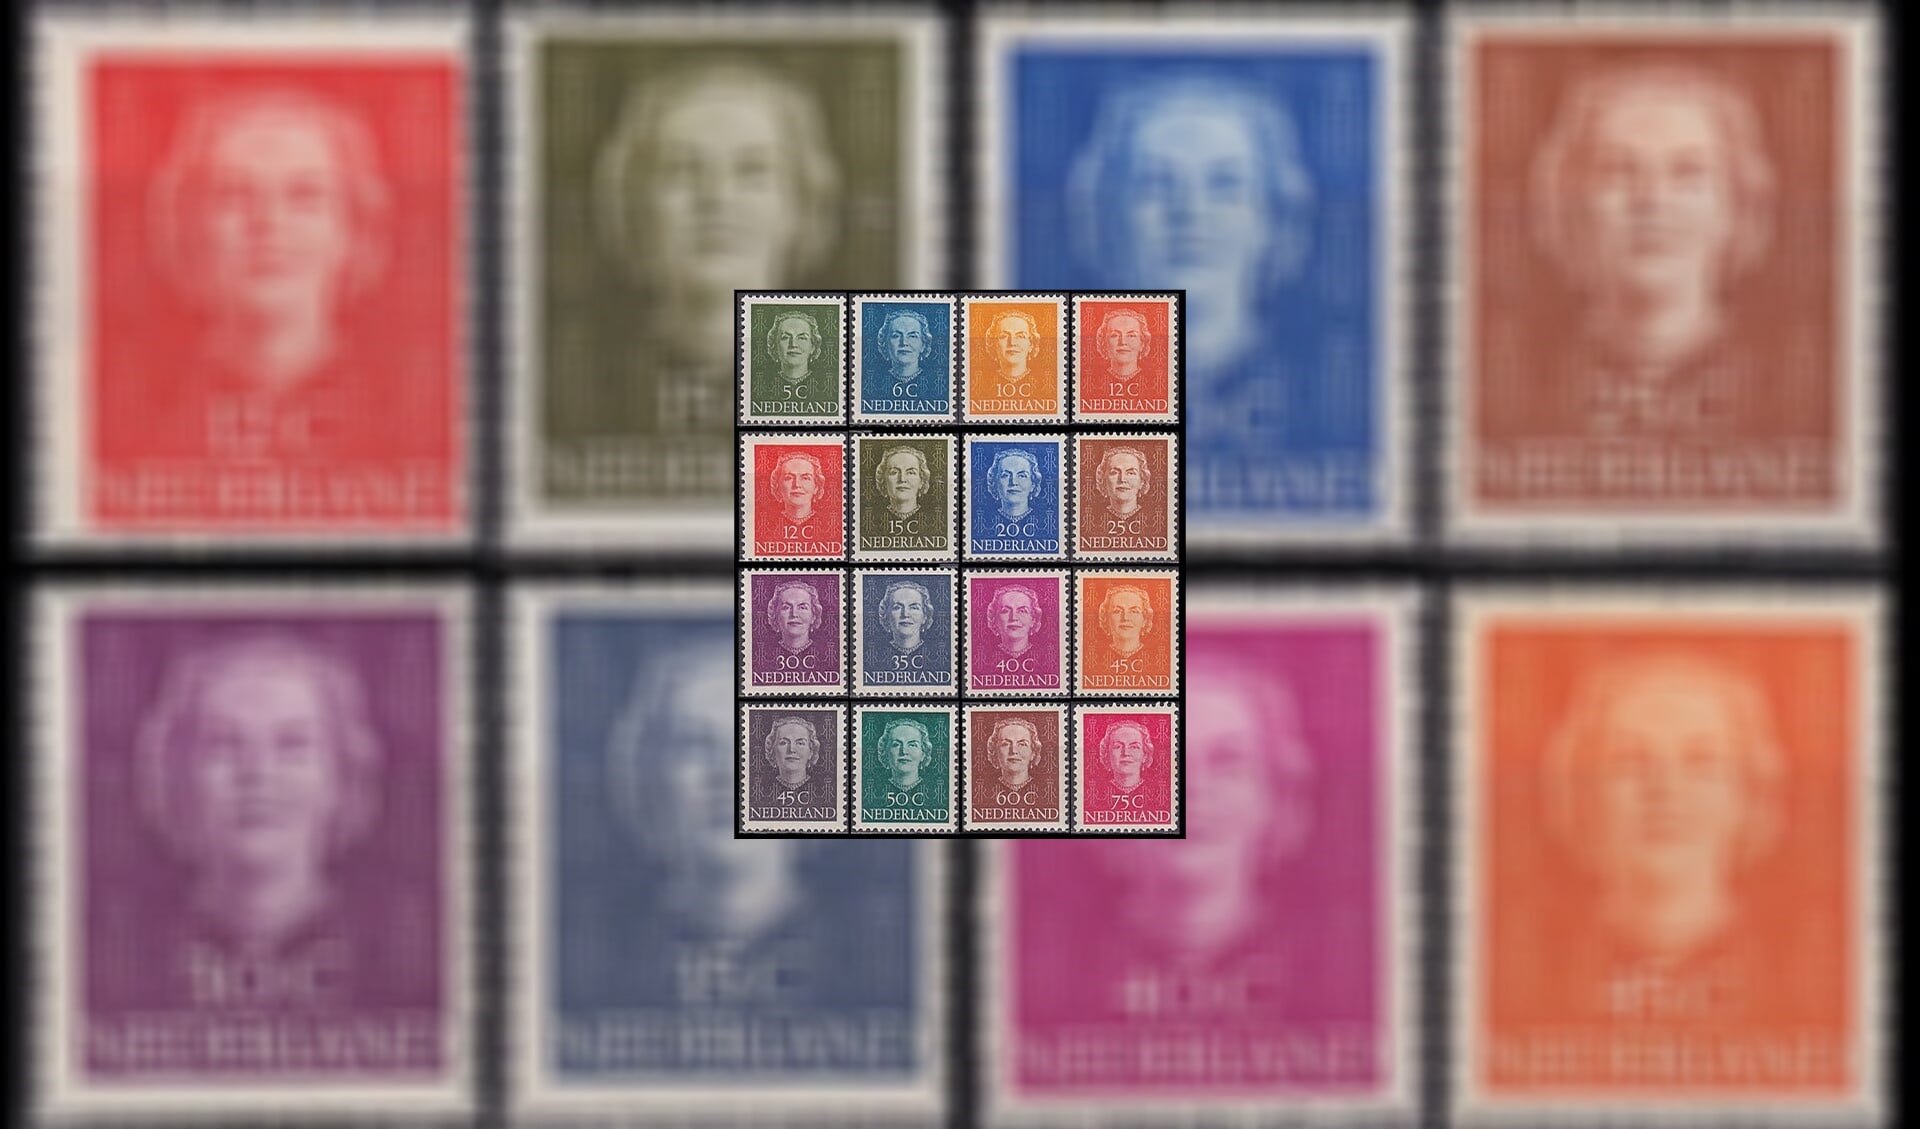 Tot 1948 sierde het gezicht van Koningin Wilhelmina onze postzegels. In 1949 kwamen de eerste Juliana zegels uit. In dat jaar werden er geen munten geslagen, pas weer in 1950